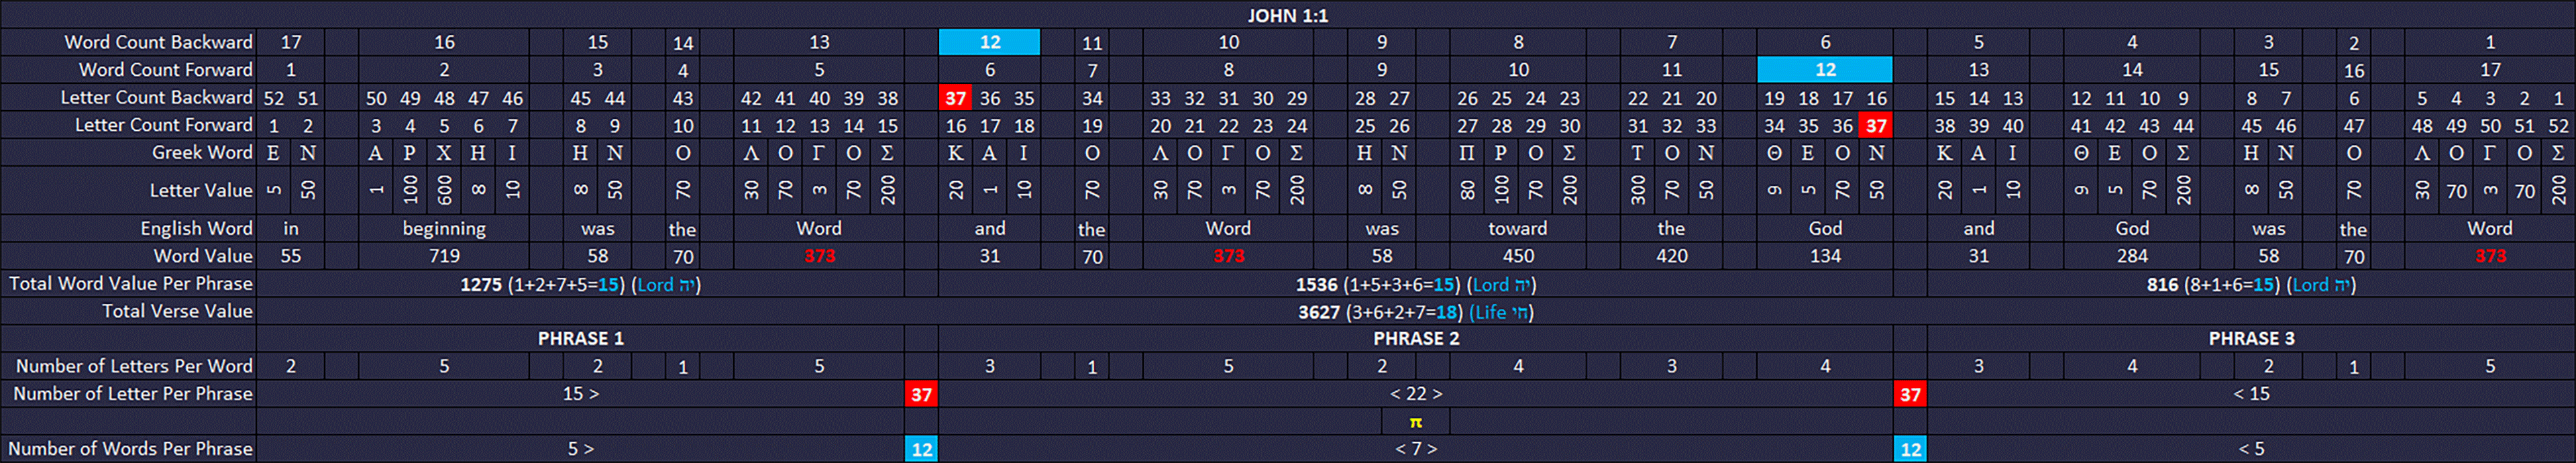 John1-1